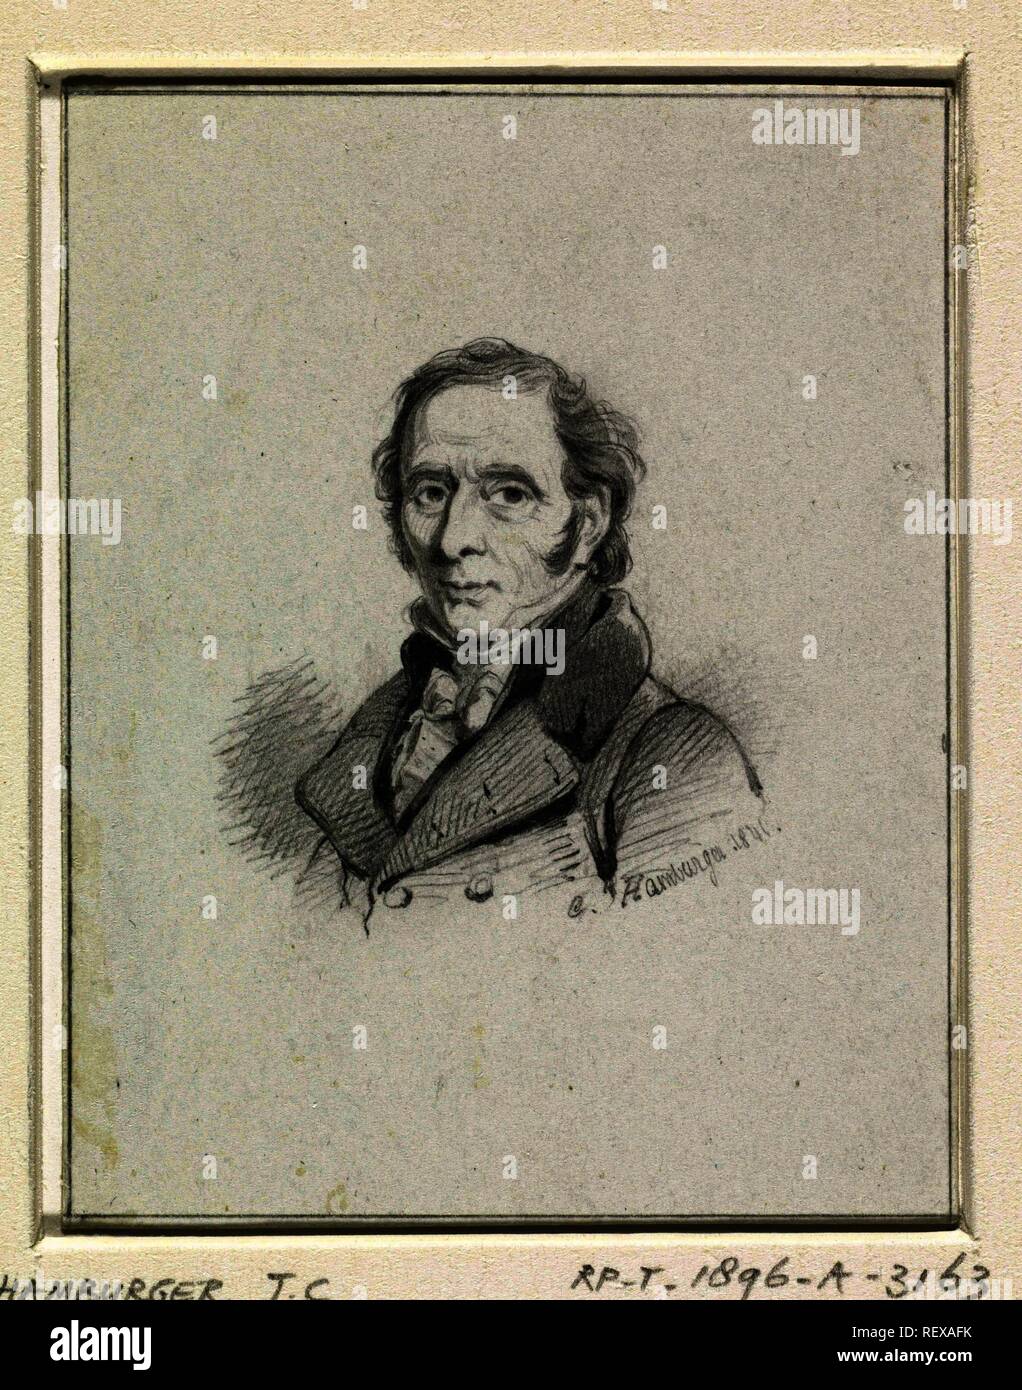 Portrait d'Adriaan de Lelie. Rapporteur pour avis : Johan Coenraad Hamburger. Dating : 1846. Dimensions : H 88 mm × w 68 mm. Musée : Rijksmuseum, Amsterdam. Banque D'Images